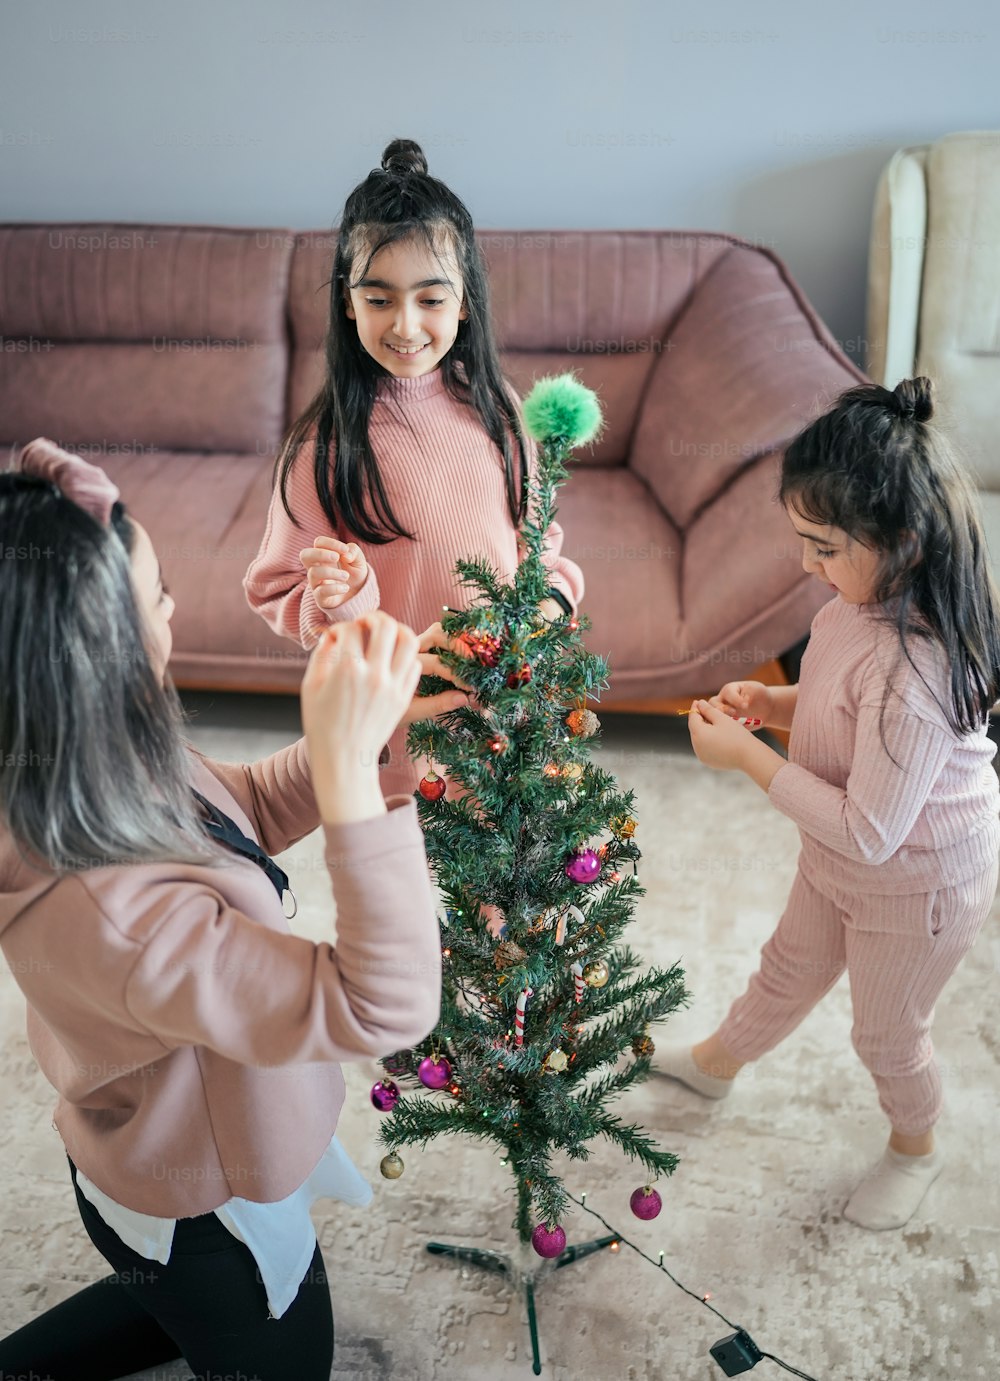 Una mujer y dos niñas decorando un árbol de Navidad